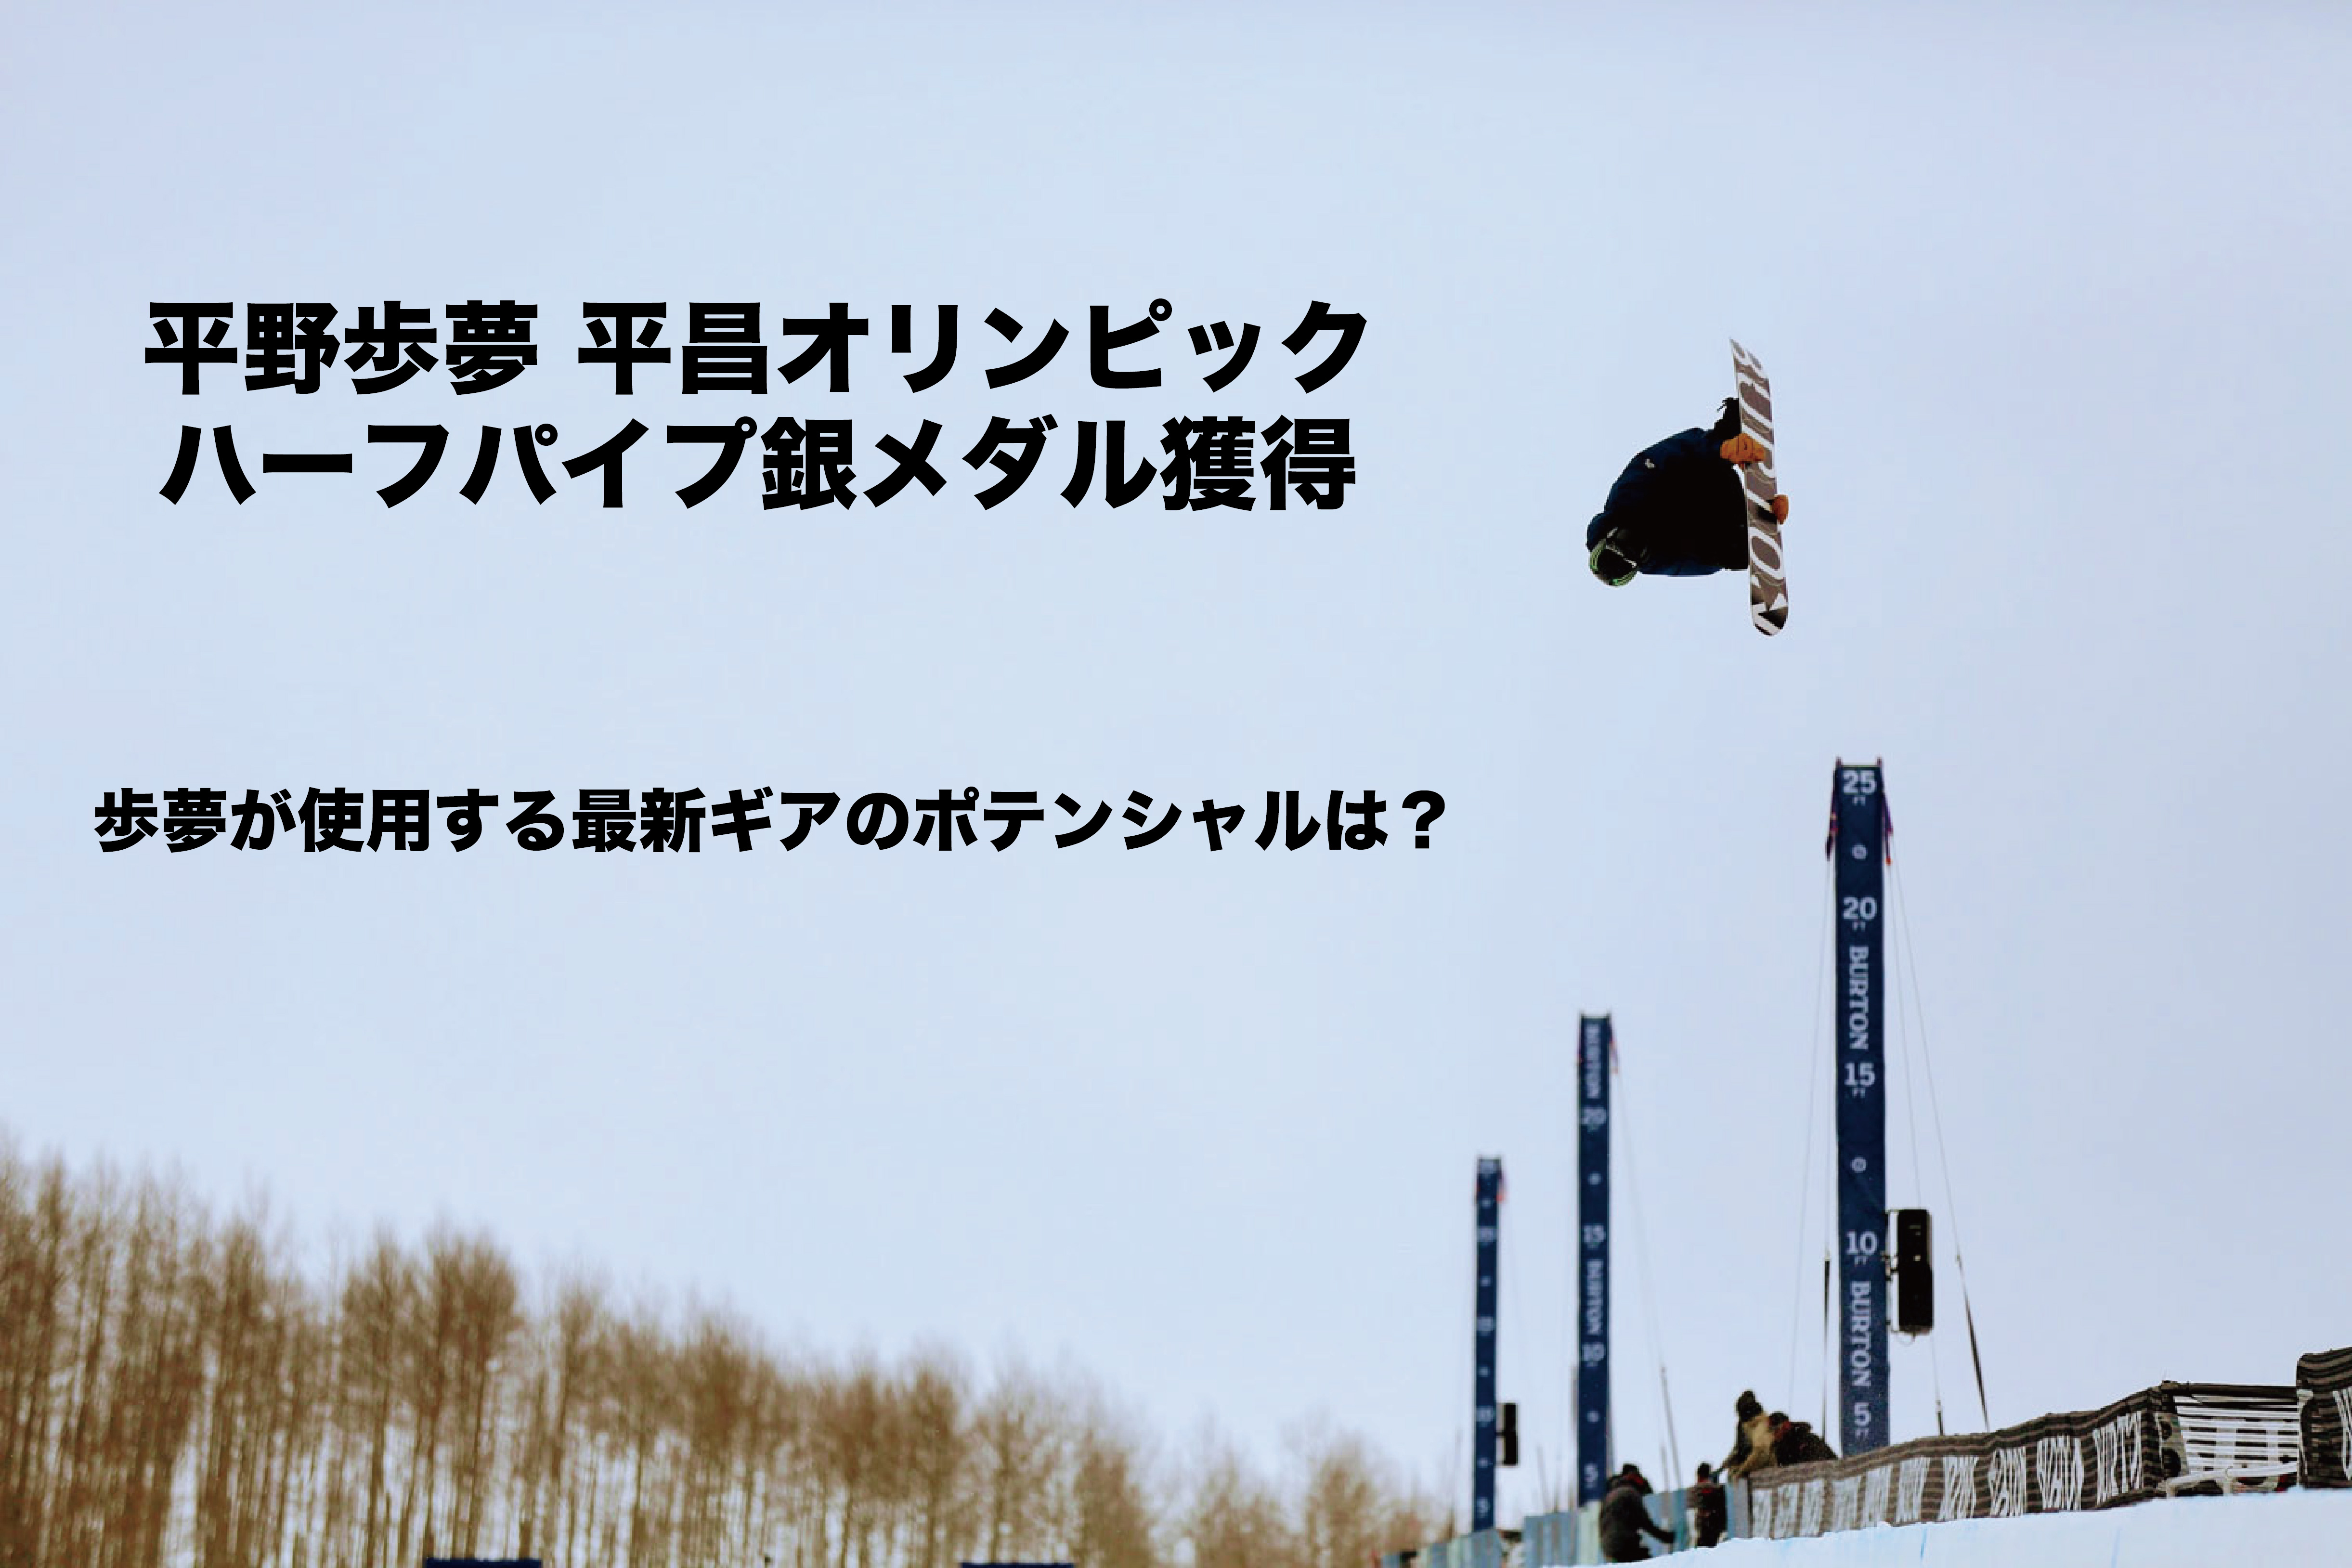 平野歩夢 銀メダル獲得!! 使用ボード〜最新型CUSTOMとMALAVITA EST